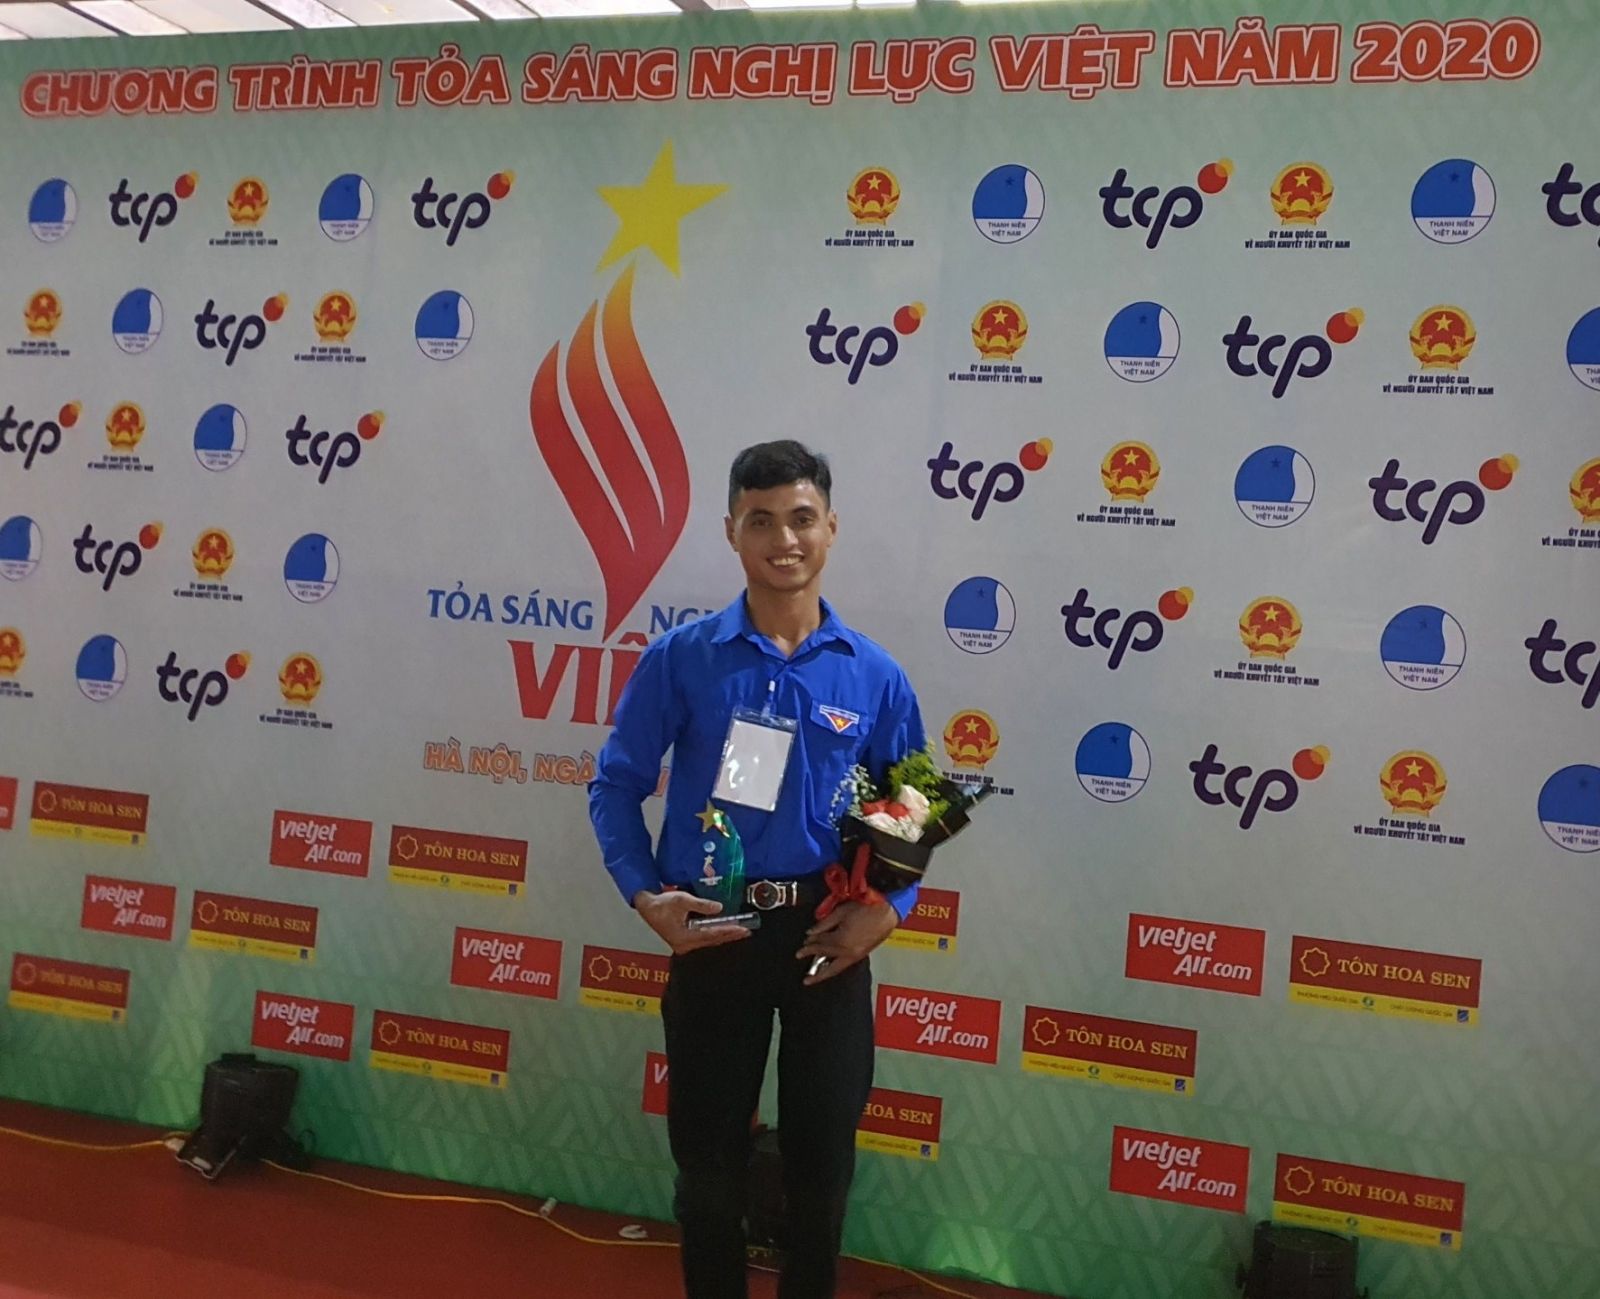 Anh Nguyễn Tấn Vũ được vinh danh trong chương trình “Tỏa sáng nghị lực Việt” năm 2020